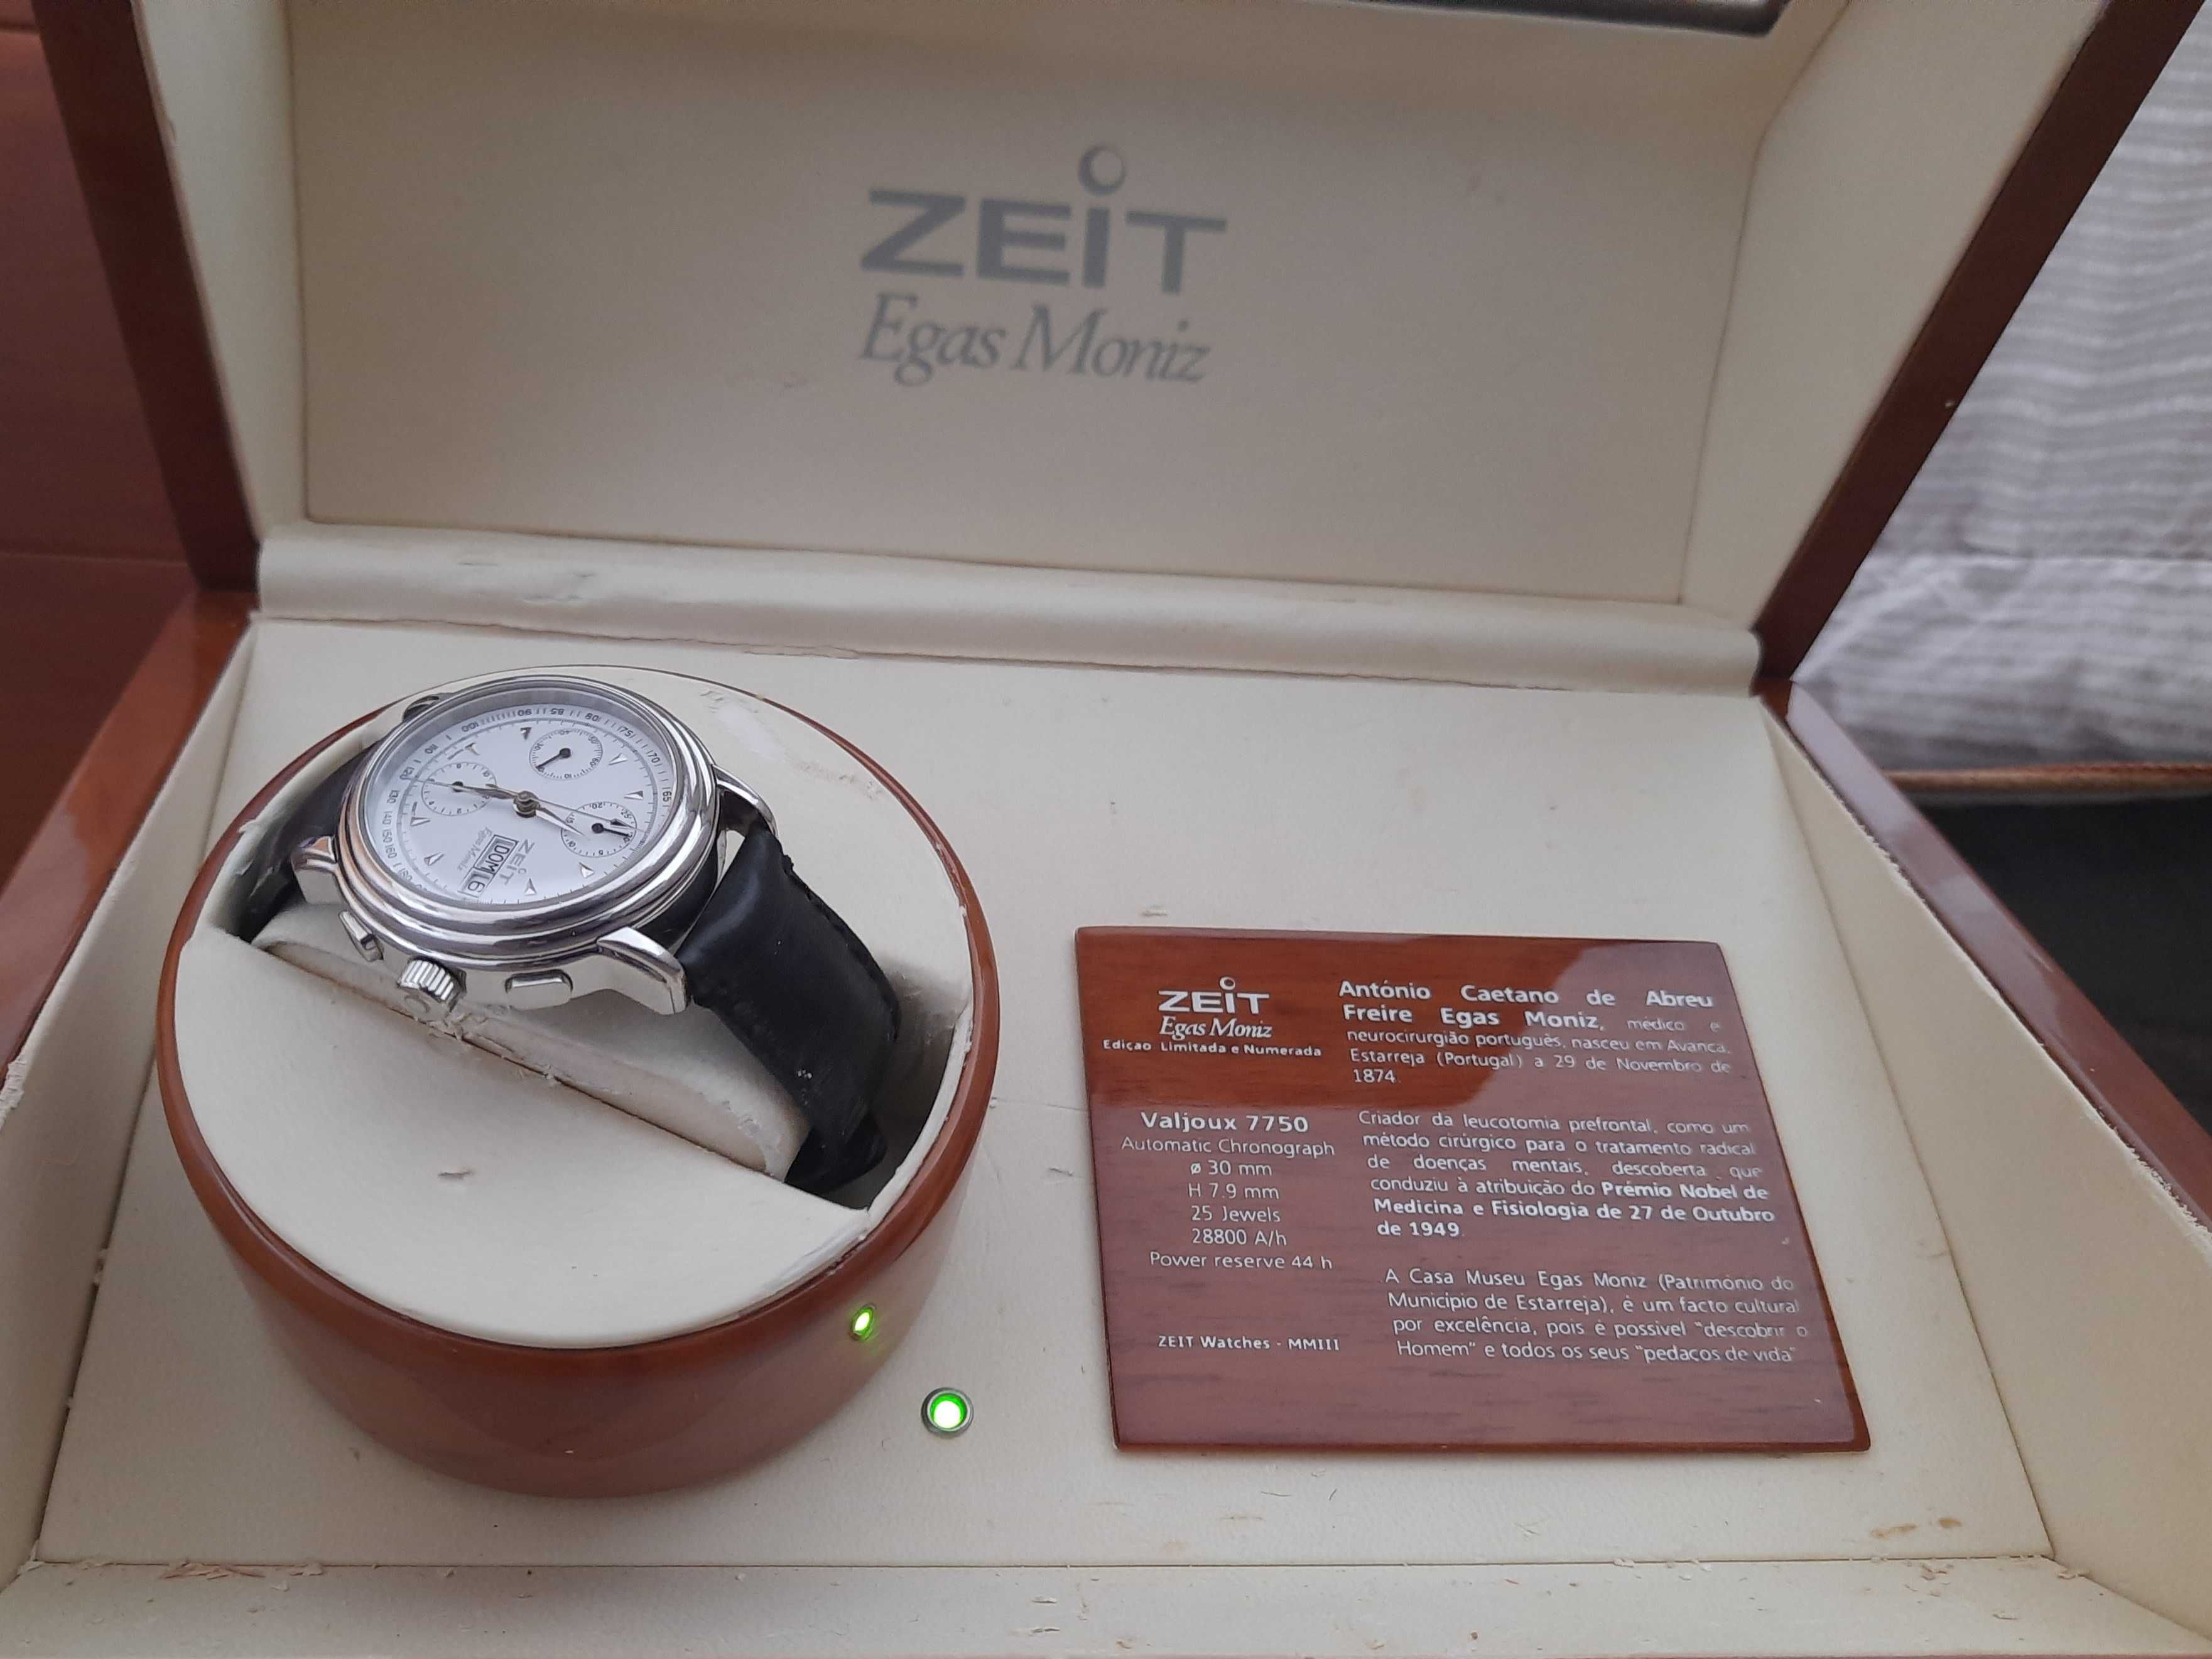 Relógio Zeit automático edição especial Egas Moniz